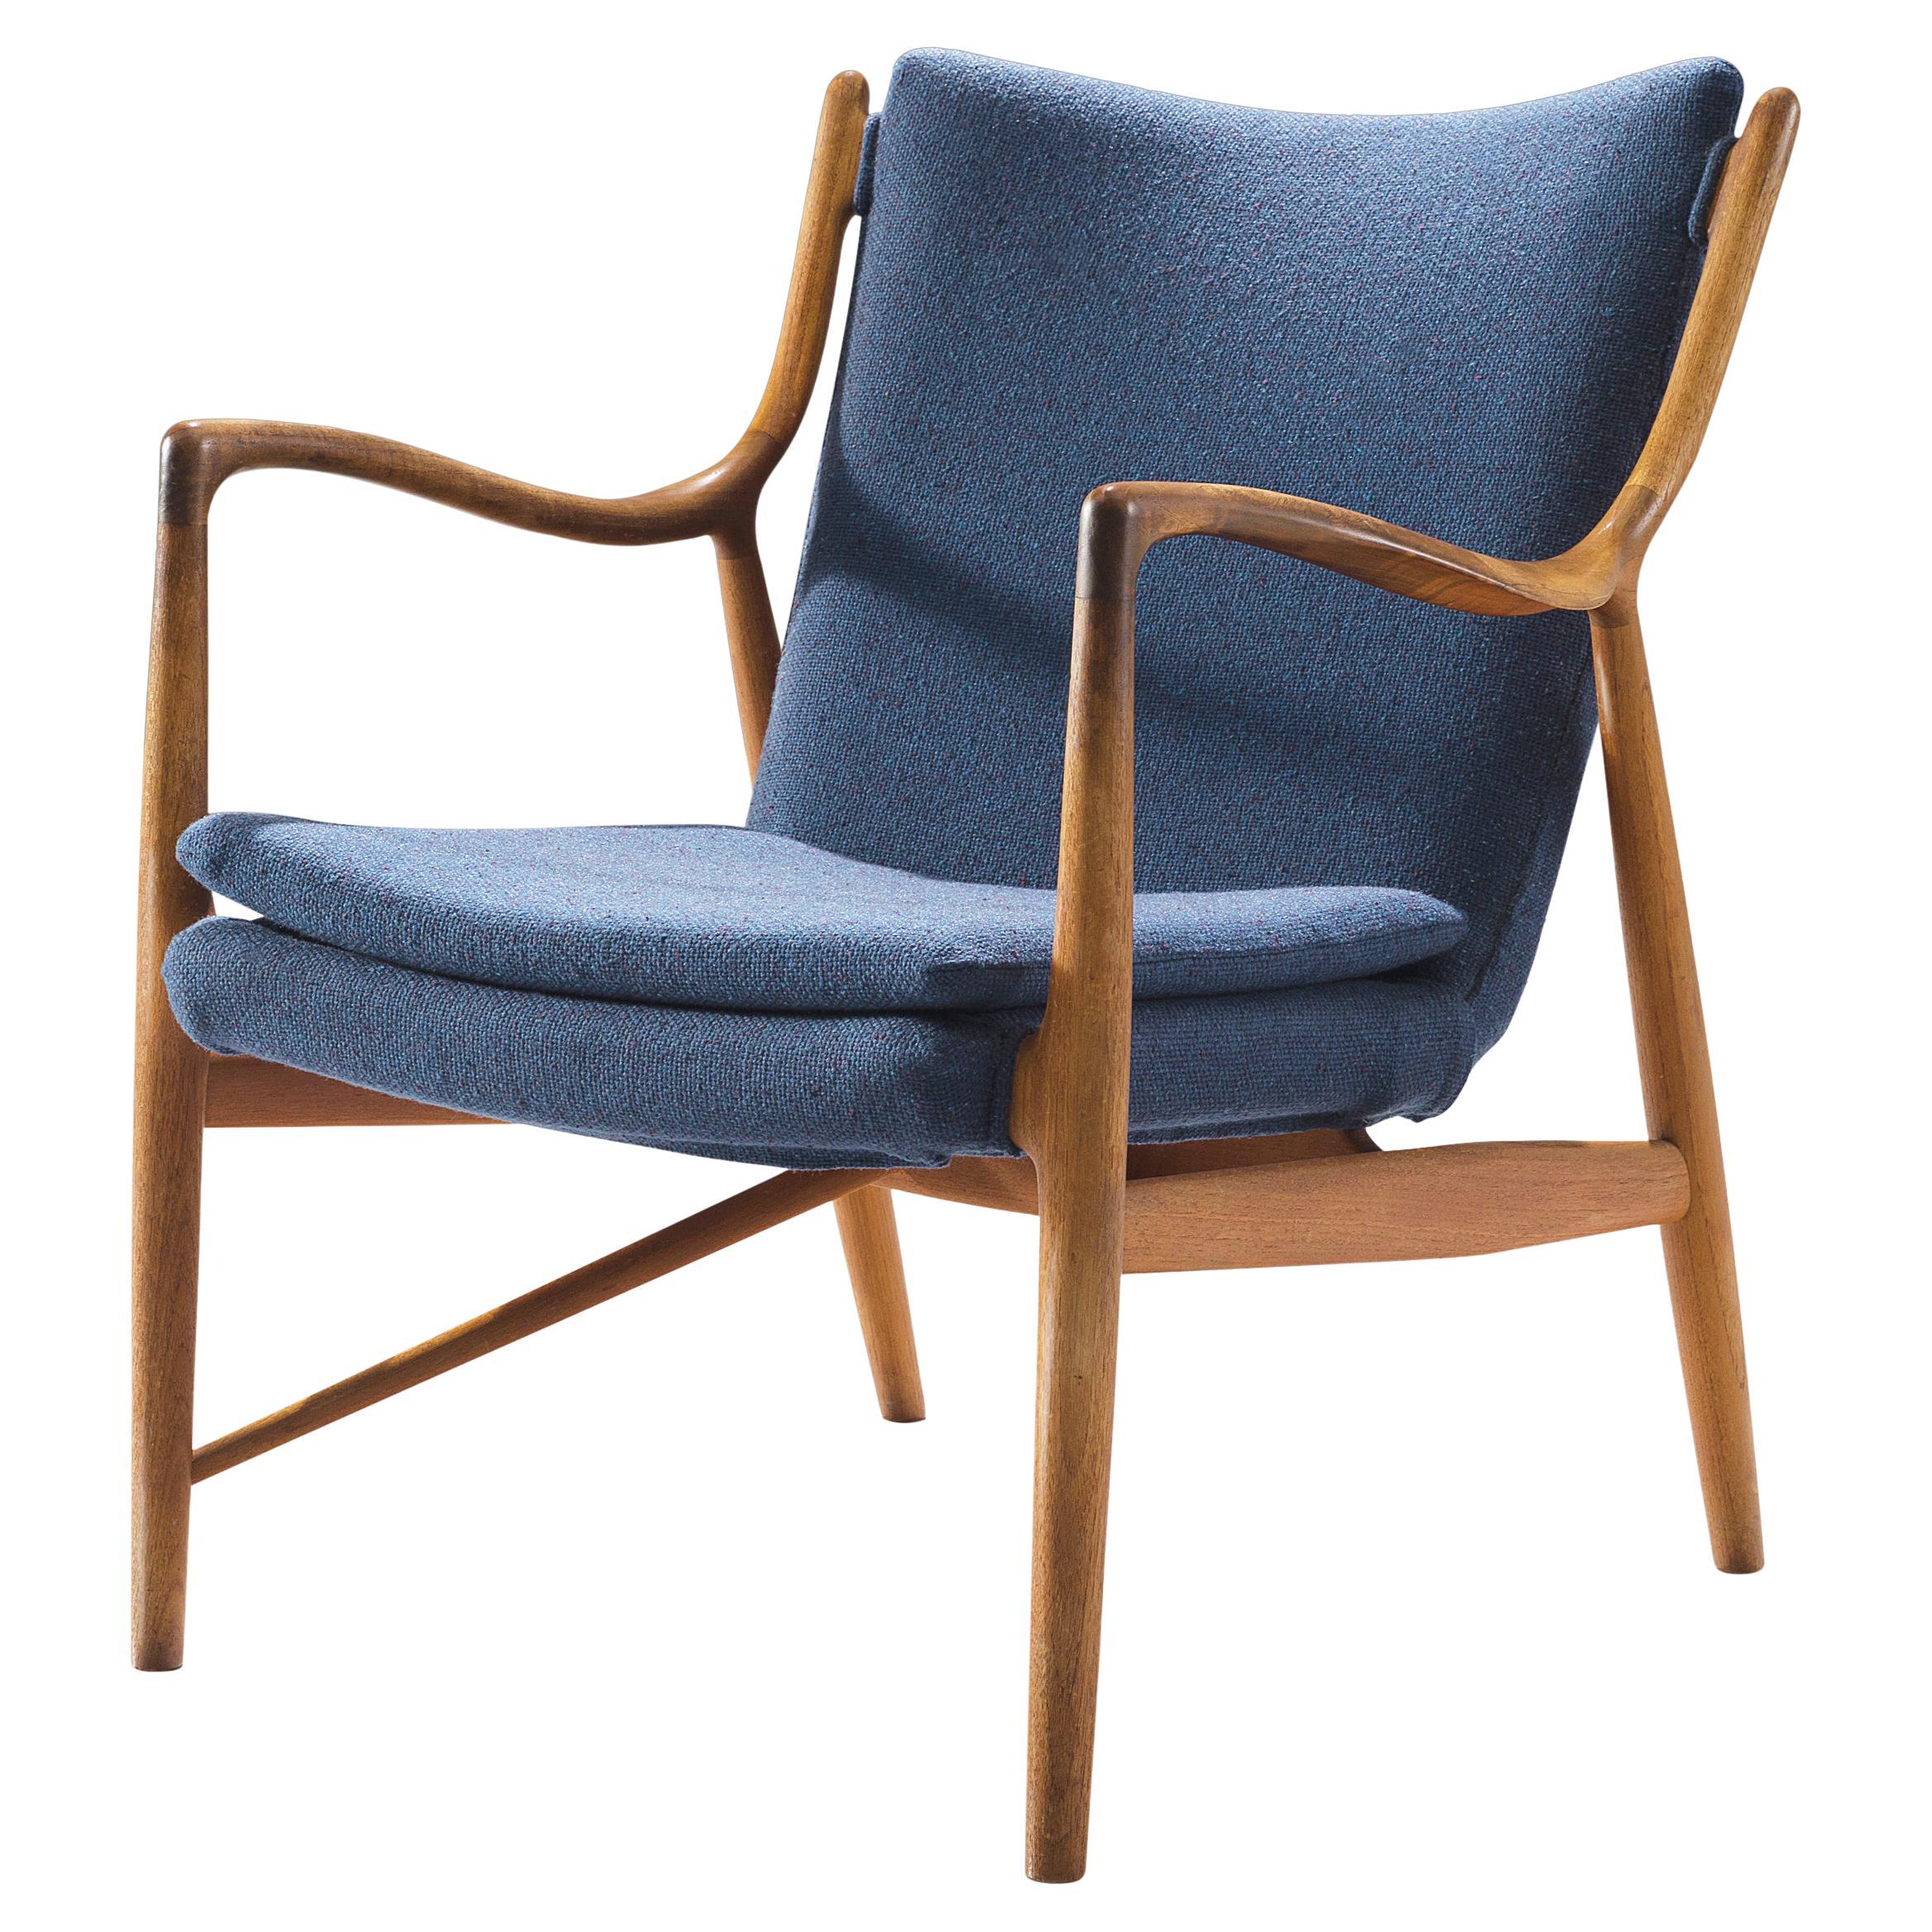 Finn Juhl for Niels Vodder Armchair 'NV 45' in Teak and Blue Fabric Upholstery